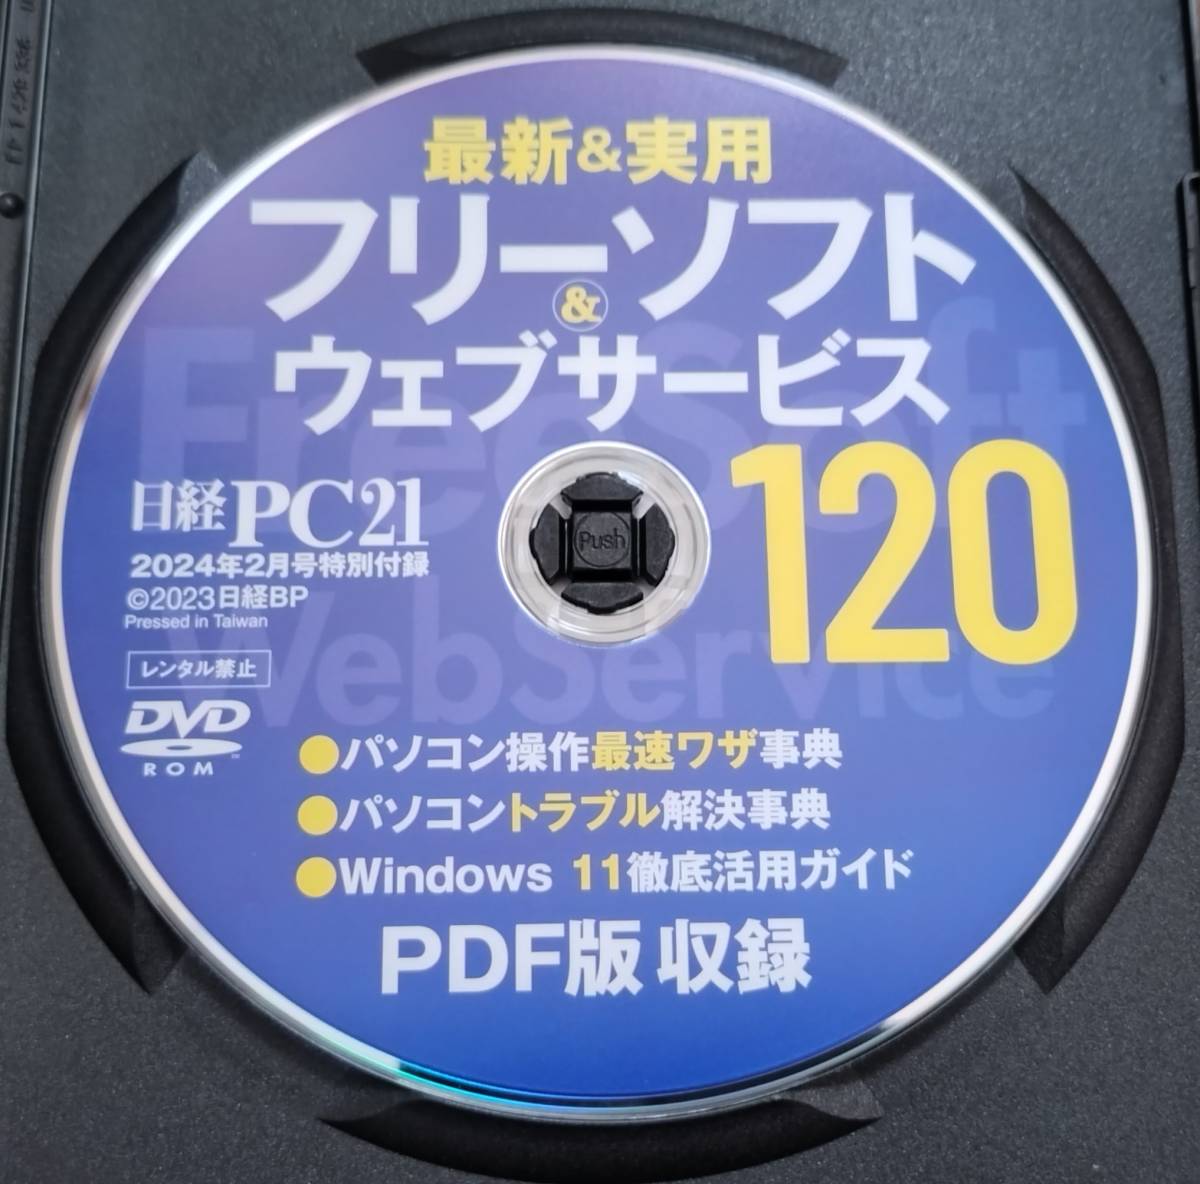  включая доставку : б/у * Nikkei PC21 2024 год 2 месяц номер дополнение DVD-ROM* новейший & практическое использование free soft & web сервис 120* не курение окружающая среда . хранение 